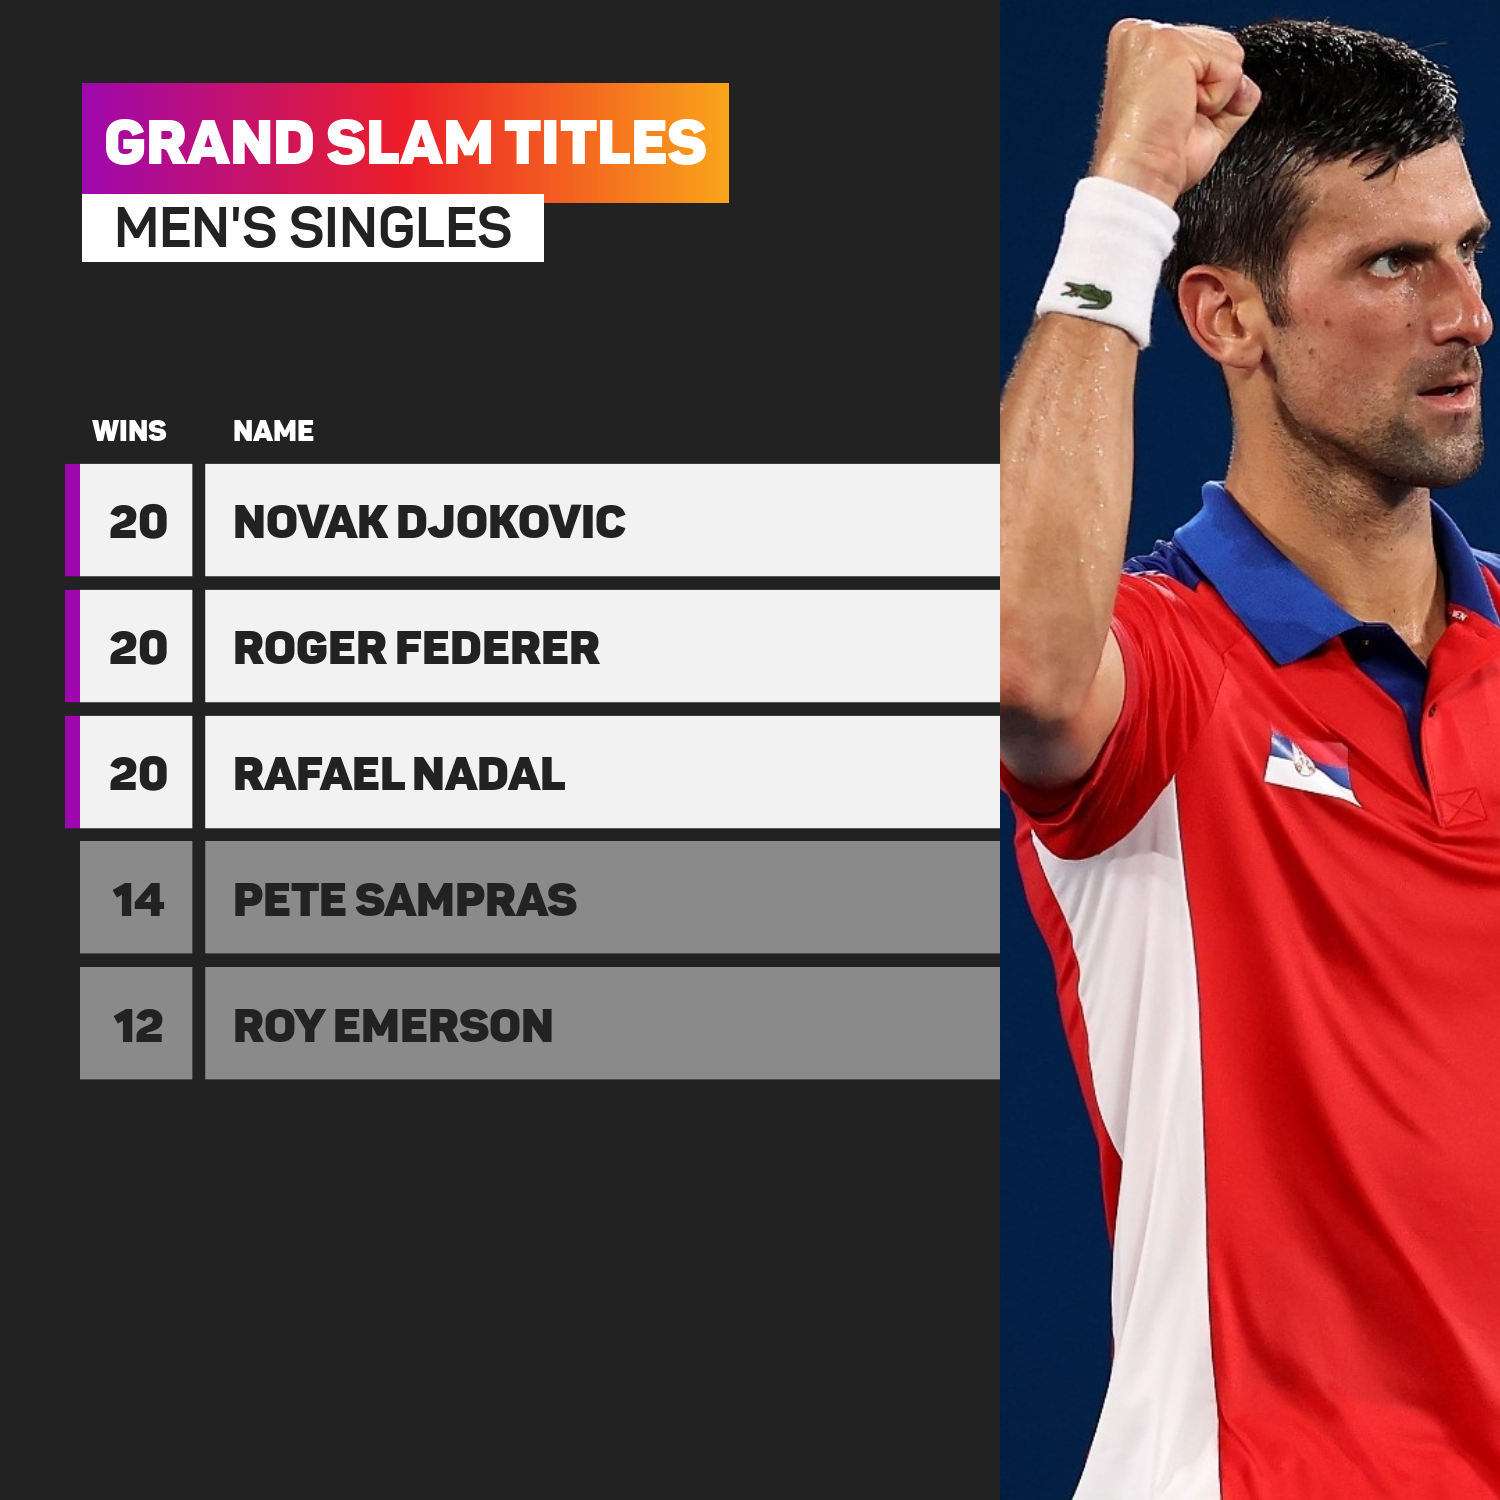 Men's grand slam winners - Djokovic, Federer, Nadal